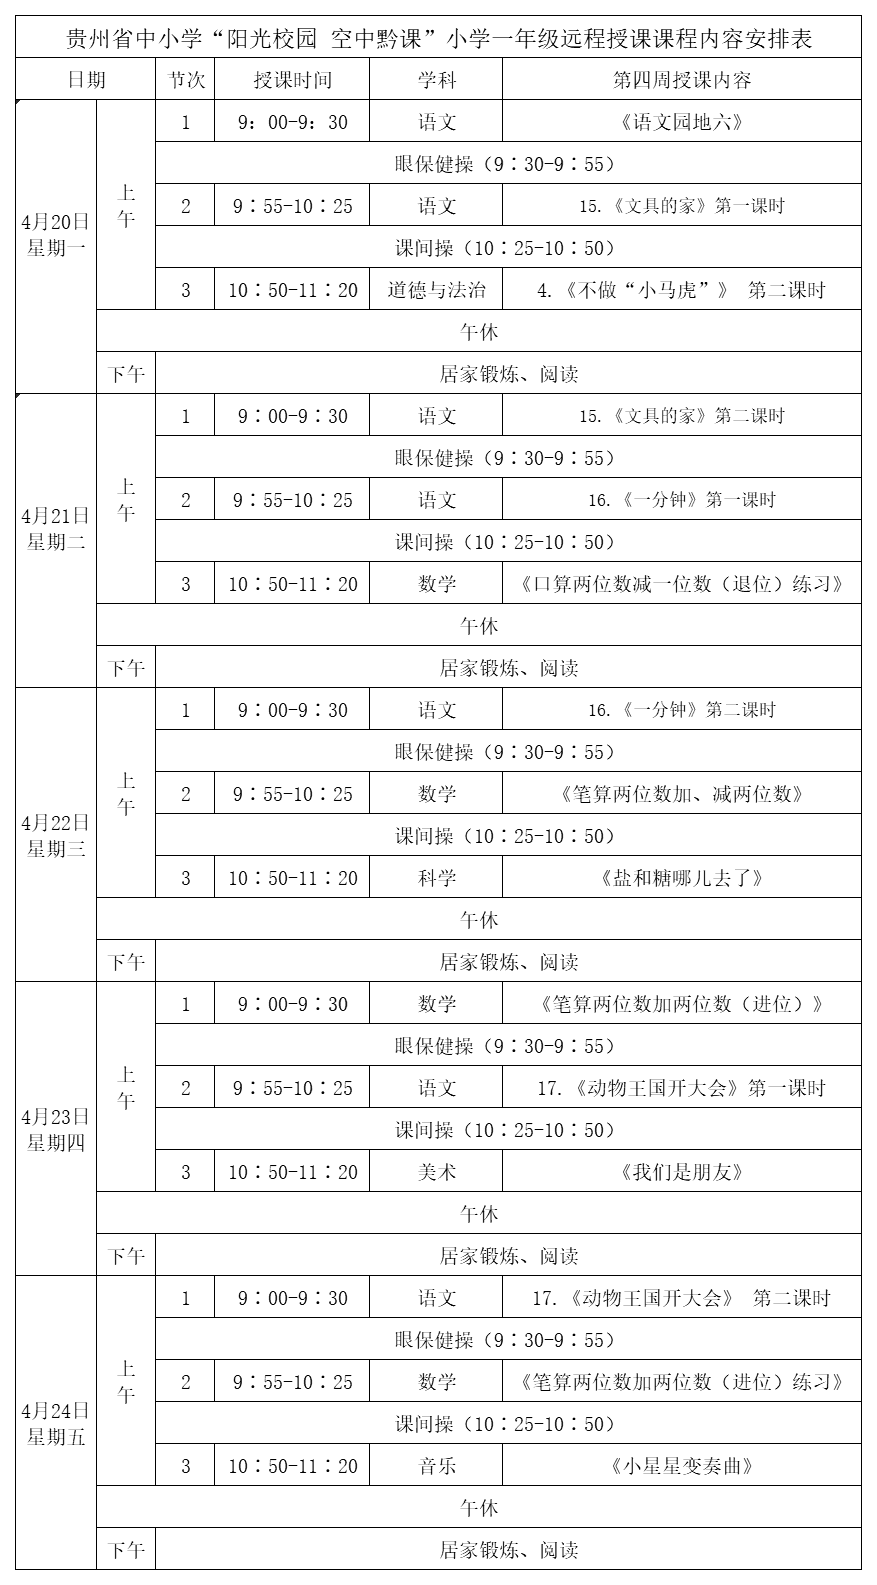 贵州中小学“空中课堂”课程表完整版公布（4月20日9